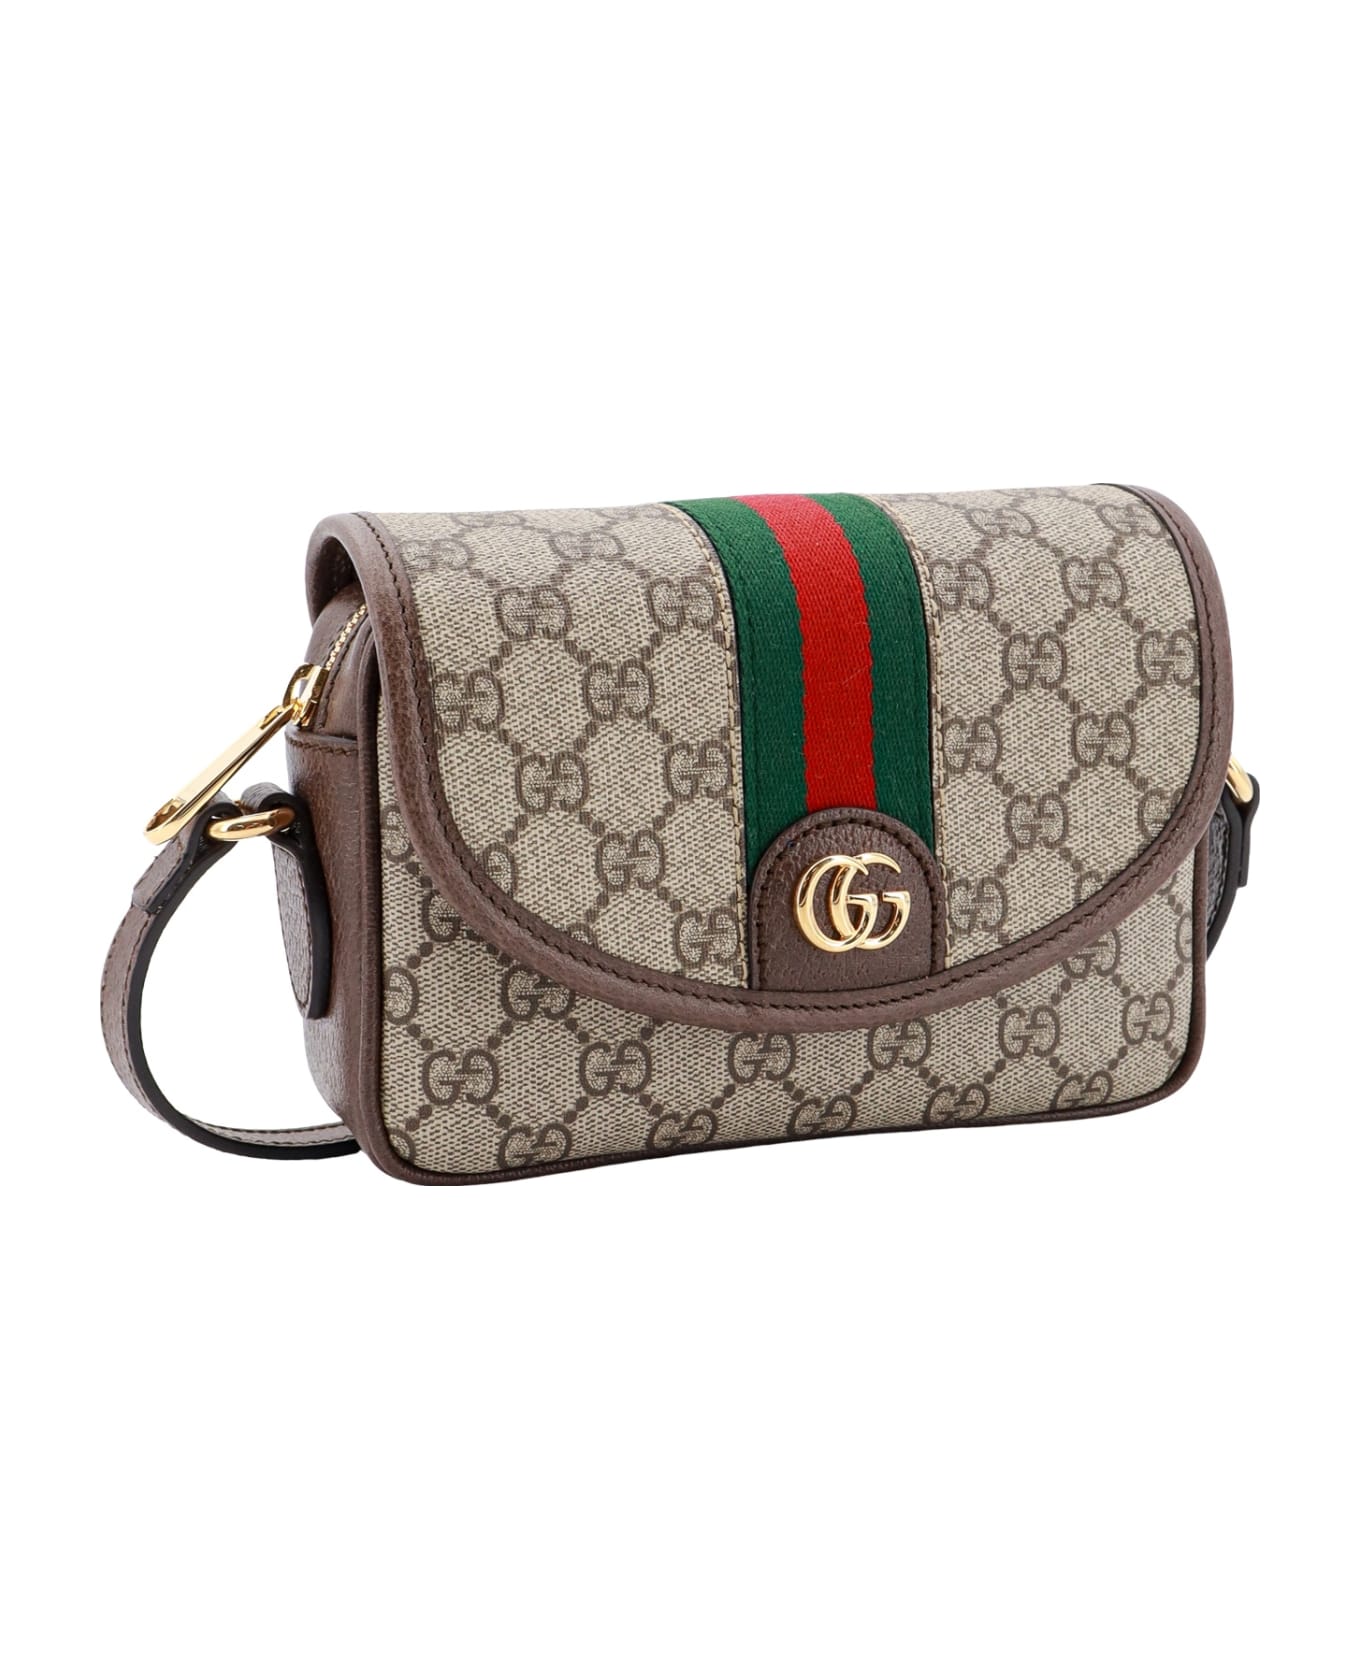 Gucci Ophidia Gg Shoulder Bag - Beige